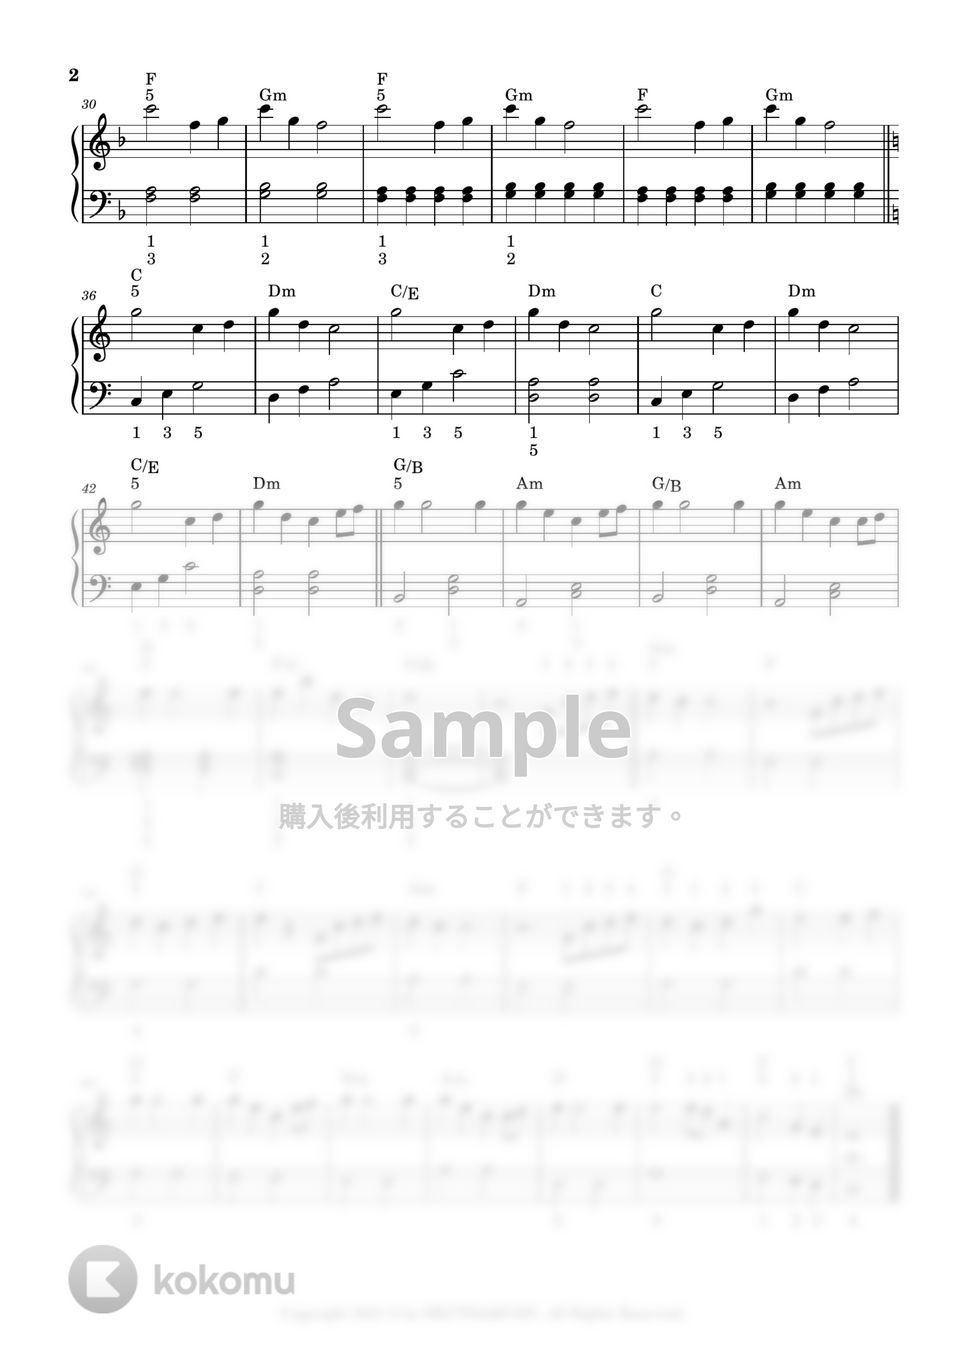 久石譲 - Summer (入門バージョン) by DEUTDAMUSIC